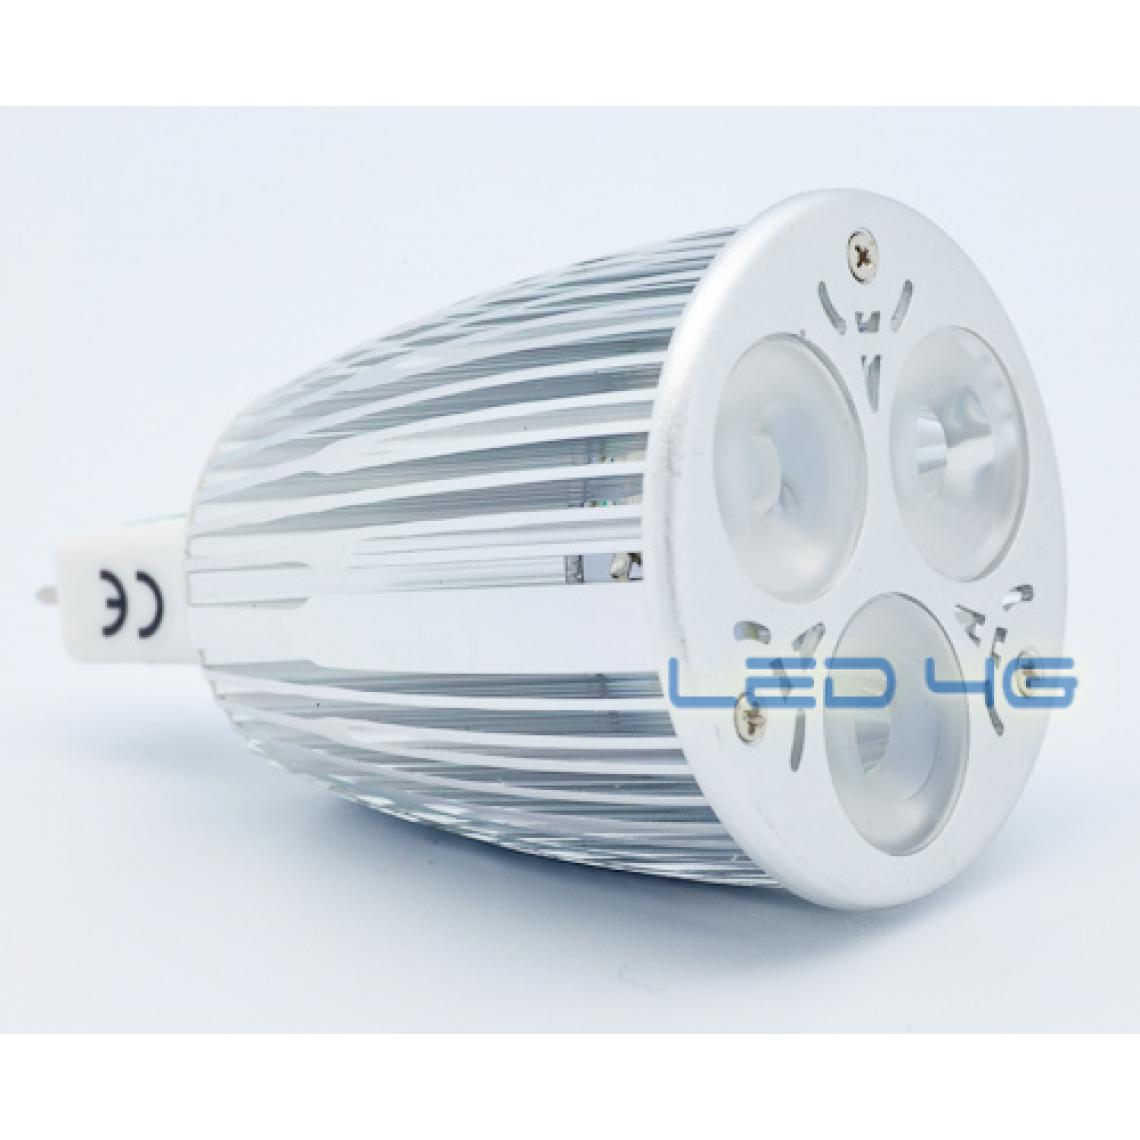 Led4G - Spot LED MR16 3 x 2W 12 Volts - Super Puissante ! (Teinte de l'éclairage : Blanc brillant) - Ampoules LED